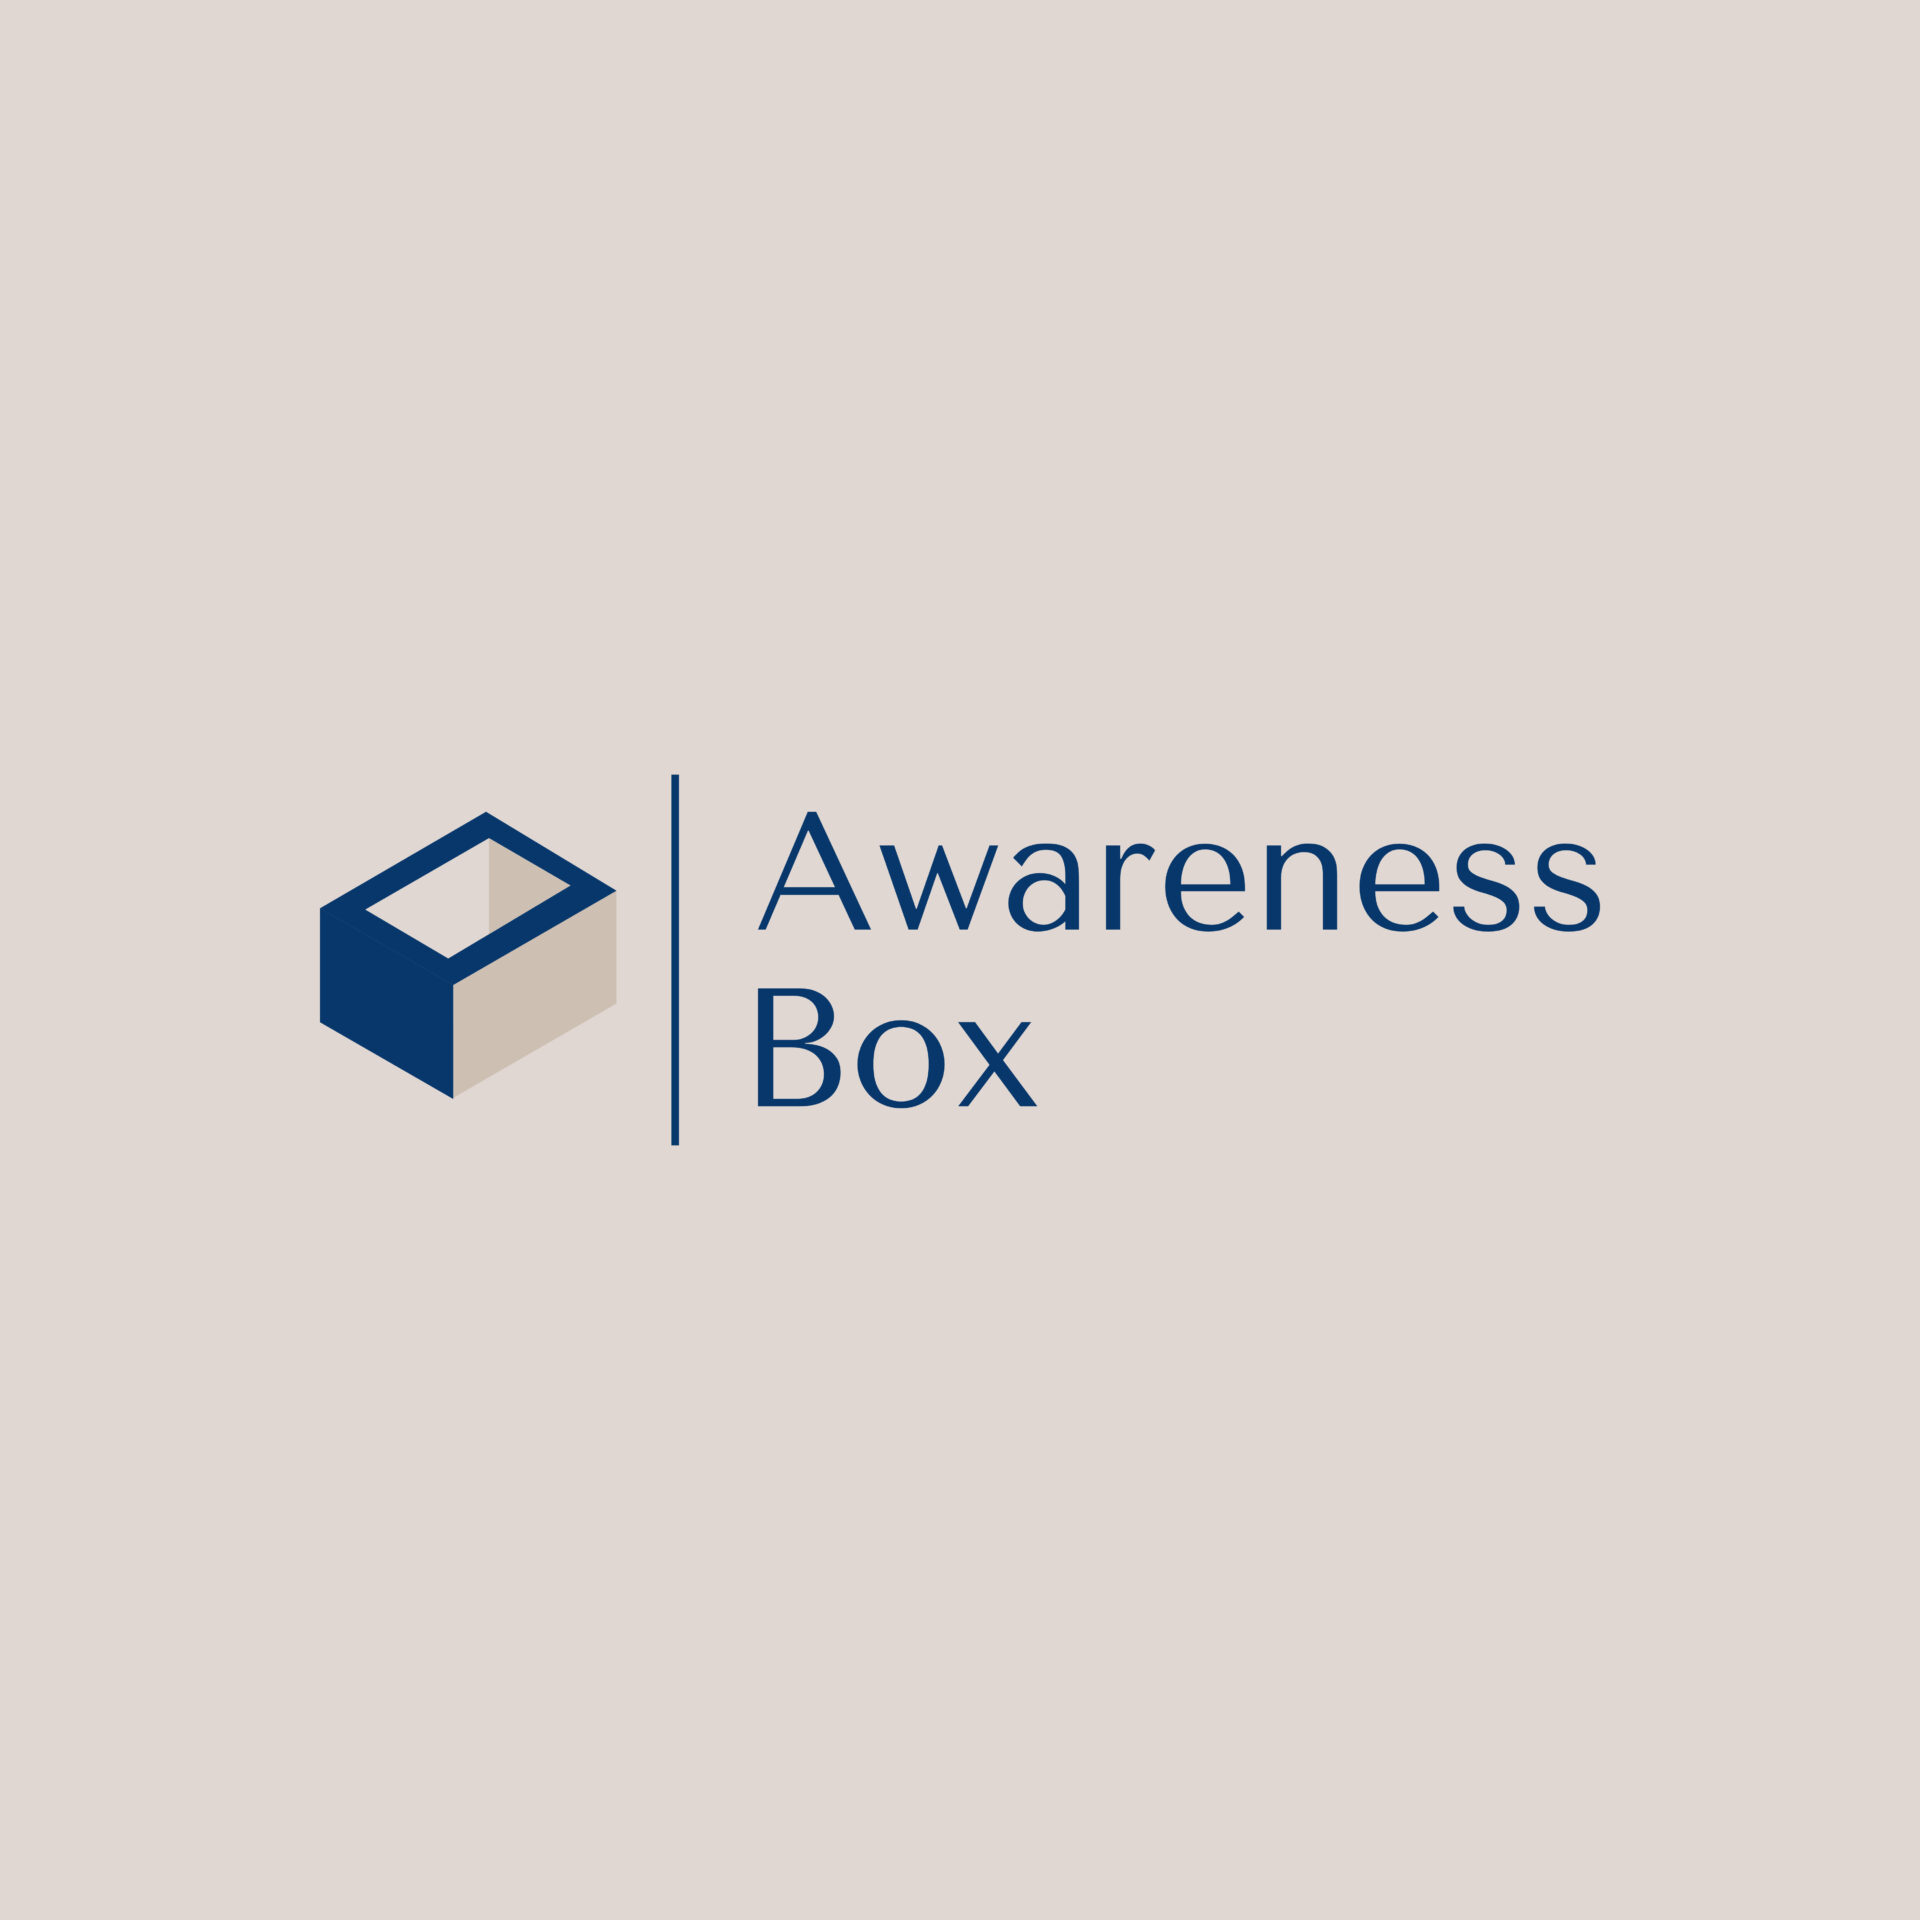 Awareness Box